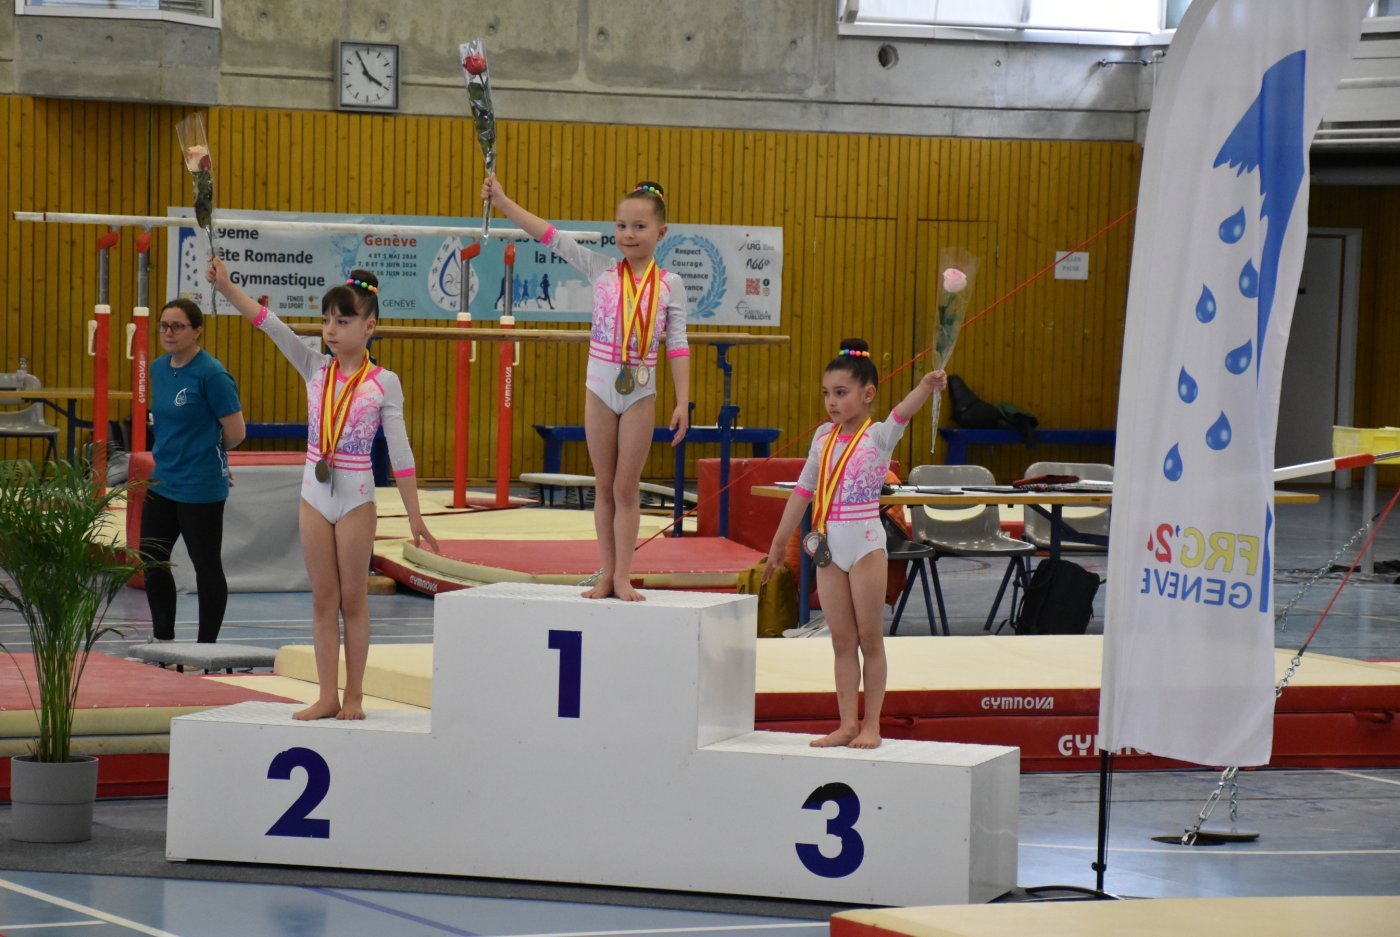 Gymnastique - Artistique, Championnat romand intégré à la Fête romande. Le podium de la catégorie PP avec, à gauche, Melina Gianfreda (2e).